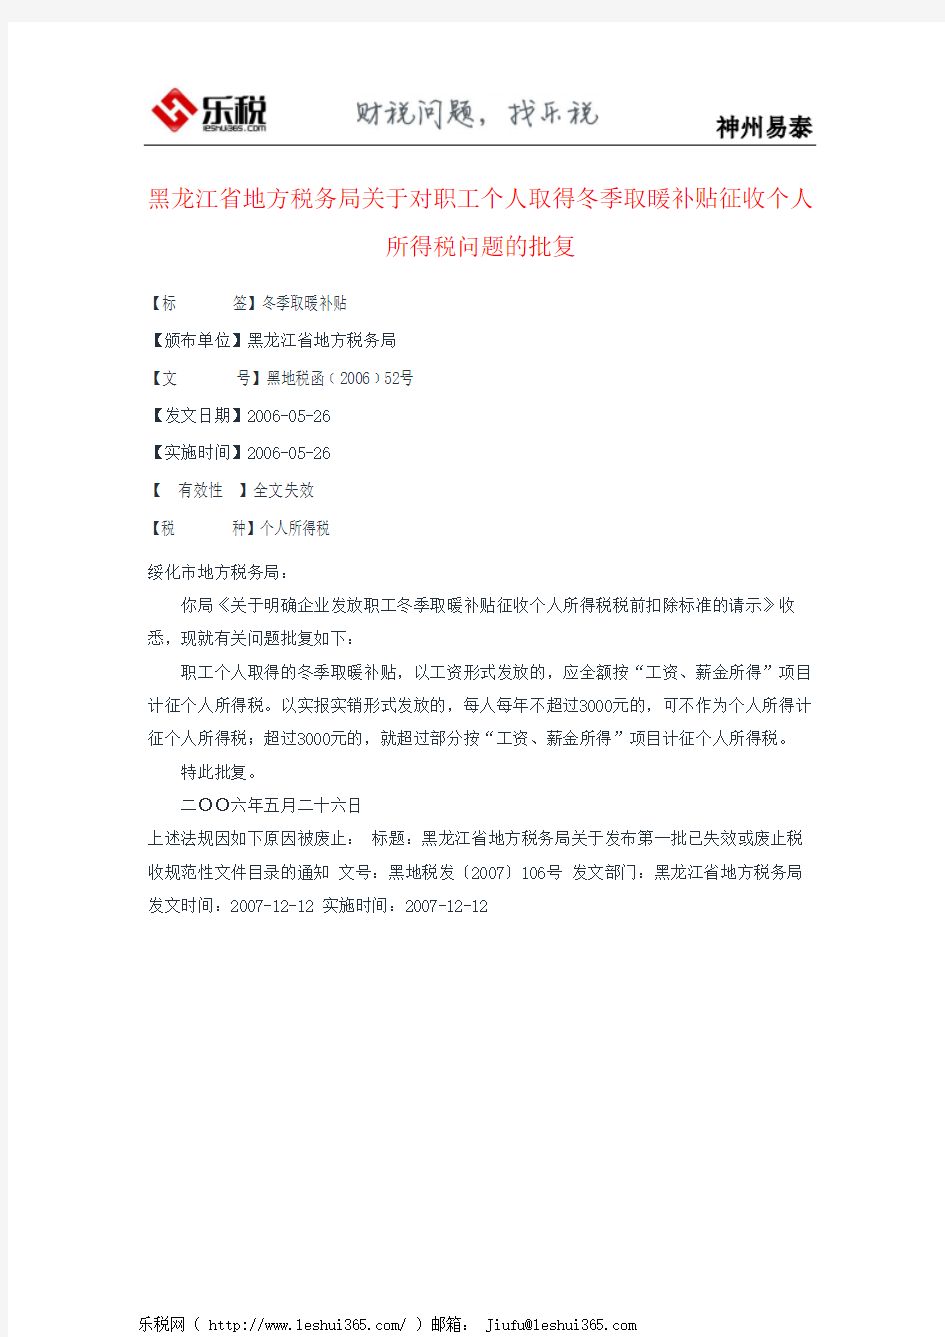 黑龙江省地方税务局关于对职工个人取得冬季取暖补贴征收个人所得